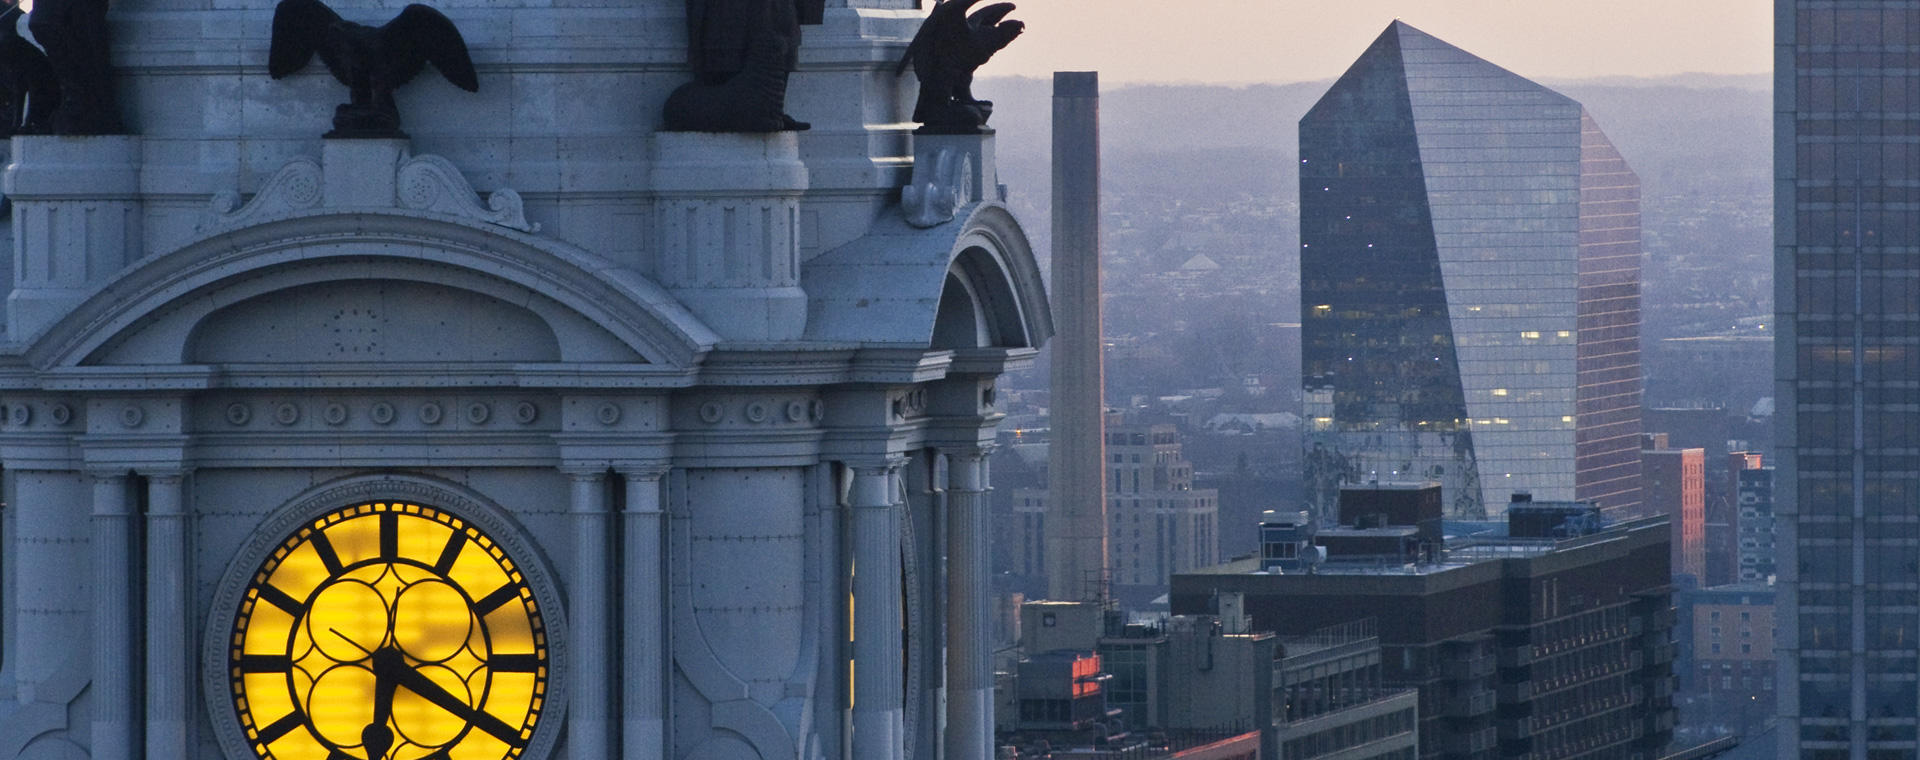 Philadelphia City Clock